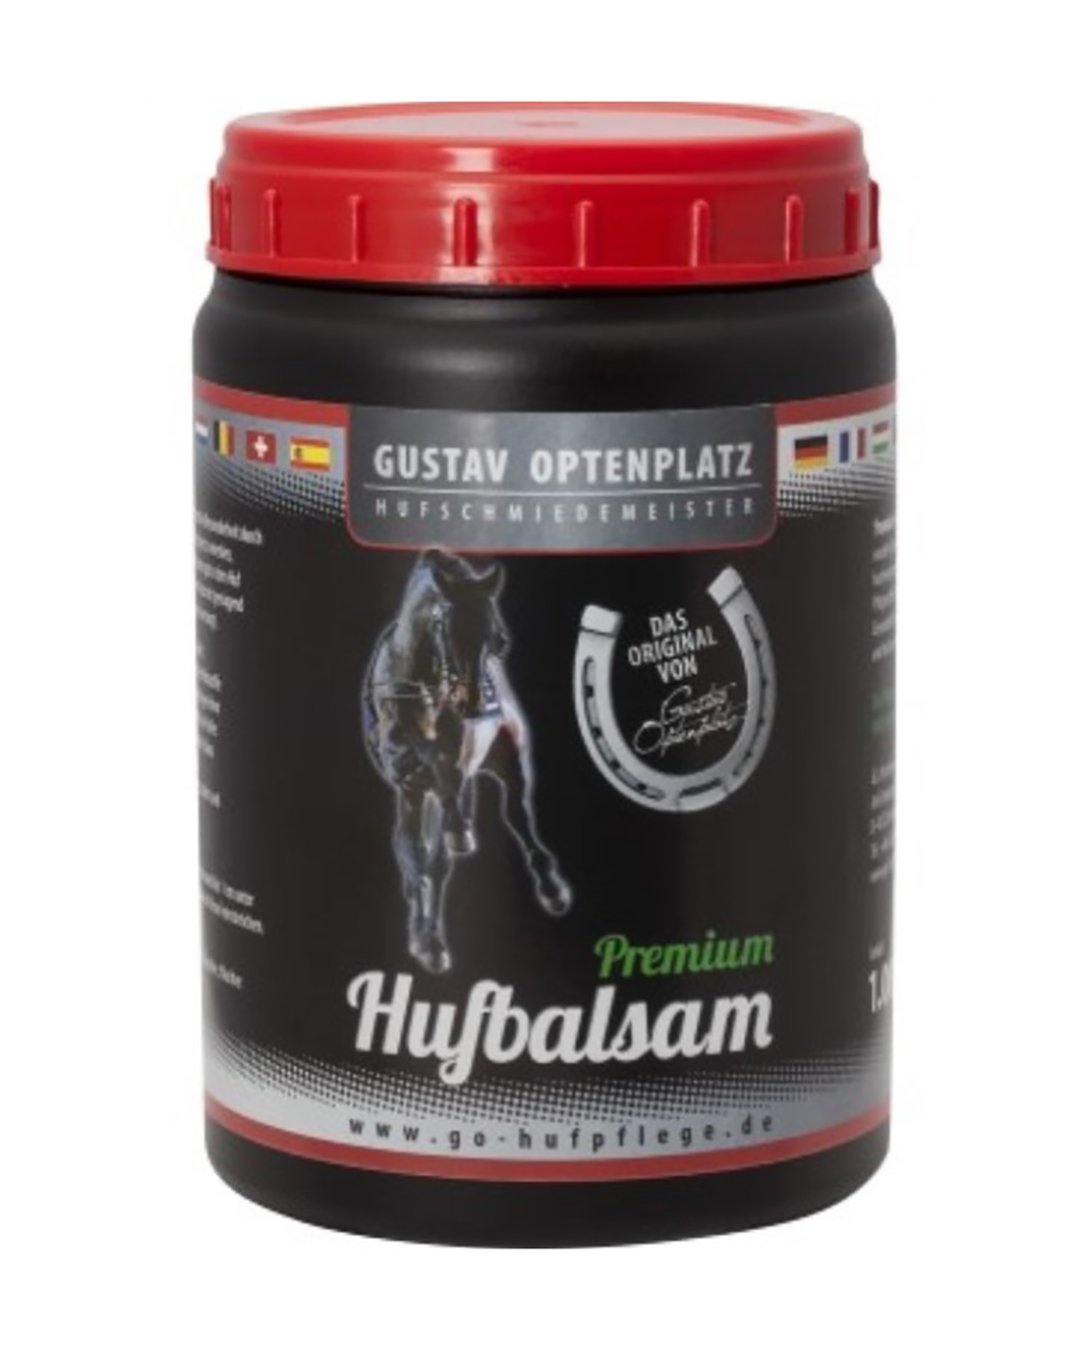 Hufbalsam-Premium 1L Dose